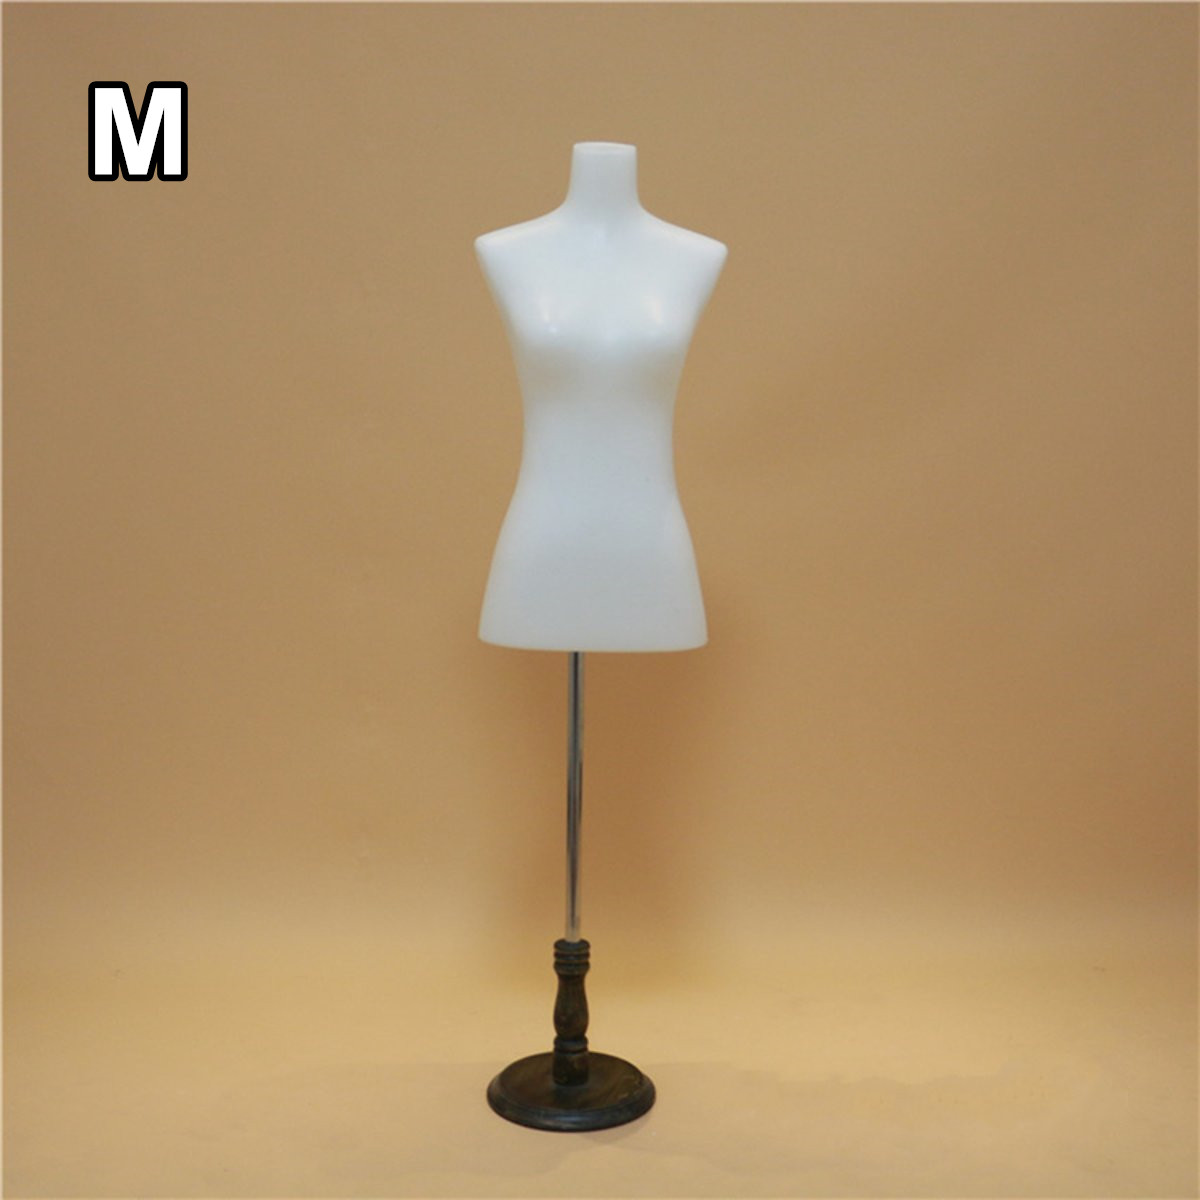 170cm-White-Female-Mannequin-Dressmaker-Model-Dummy-Display-Torso-Tailor-Dressing-Mannequin-1729645